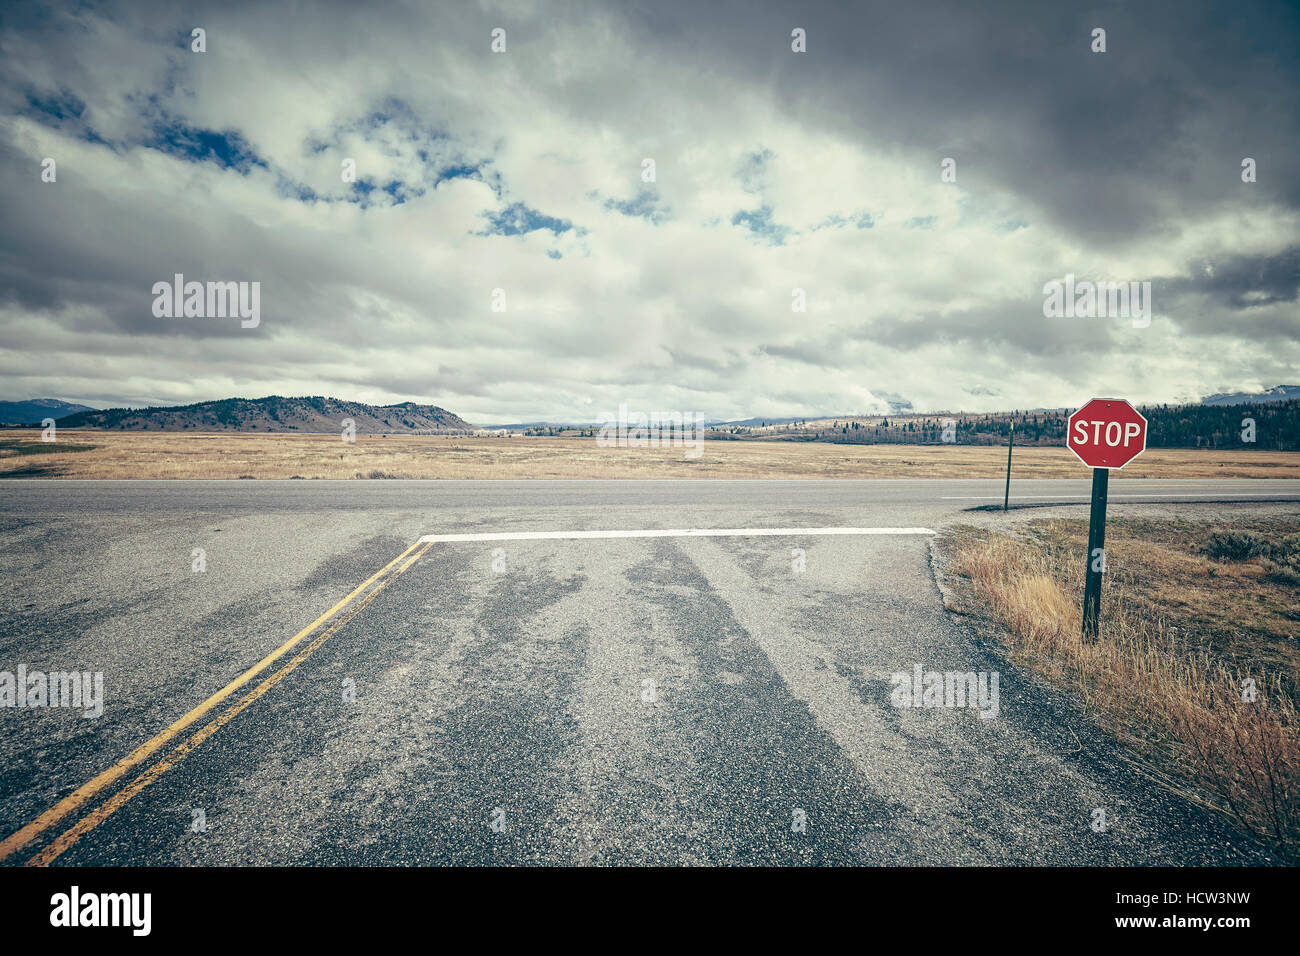 Stylisé rétro road intersection avec panneau d'arrêt sur un jour nuageux, image conceptuelle, USA. Banque D'Images